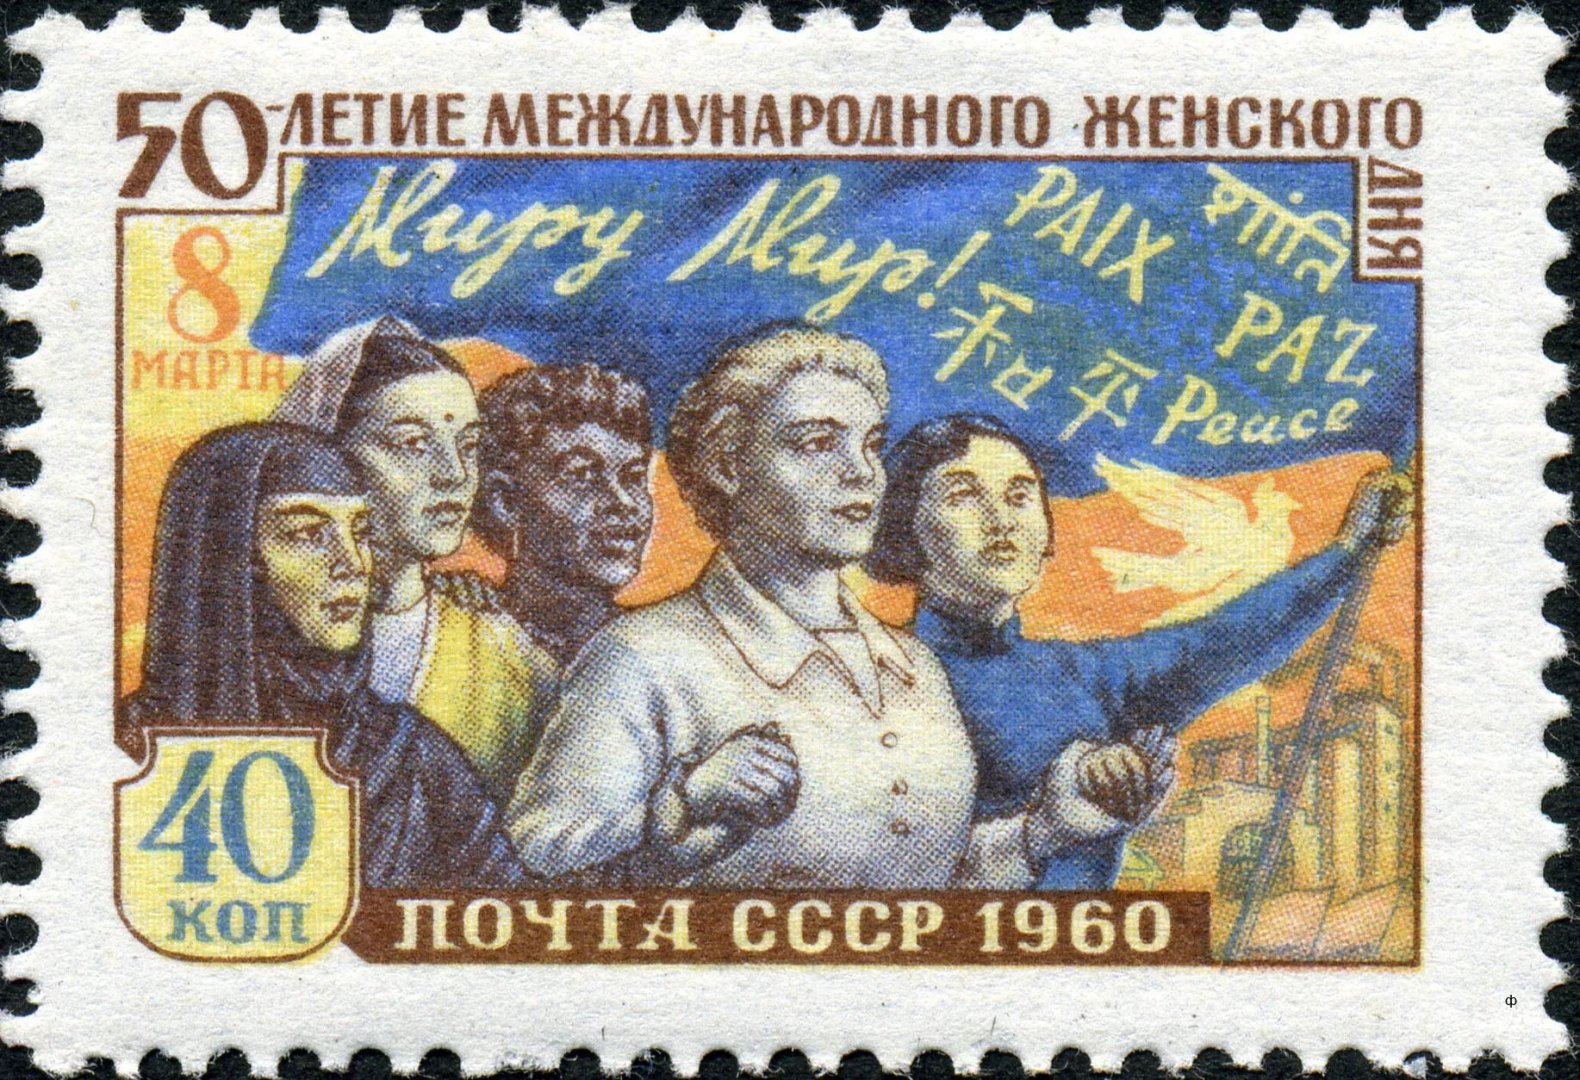 Почтовая марки в СССР.jpg